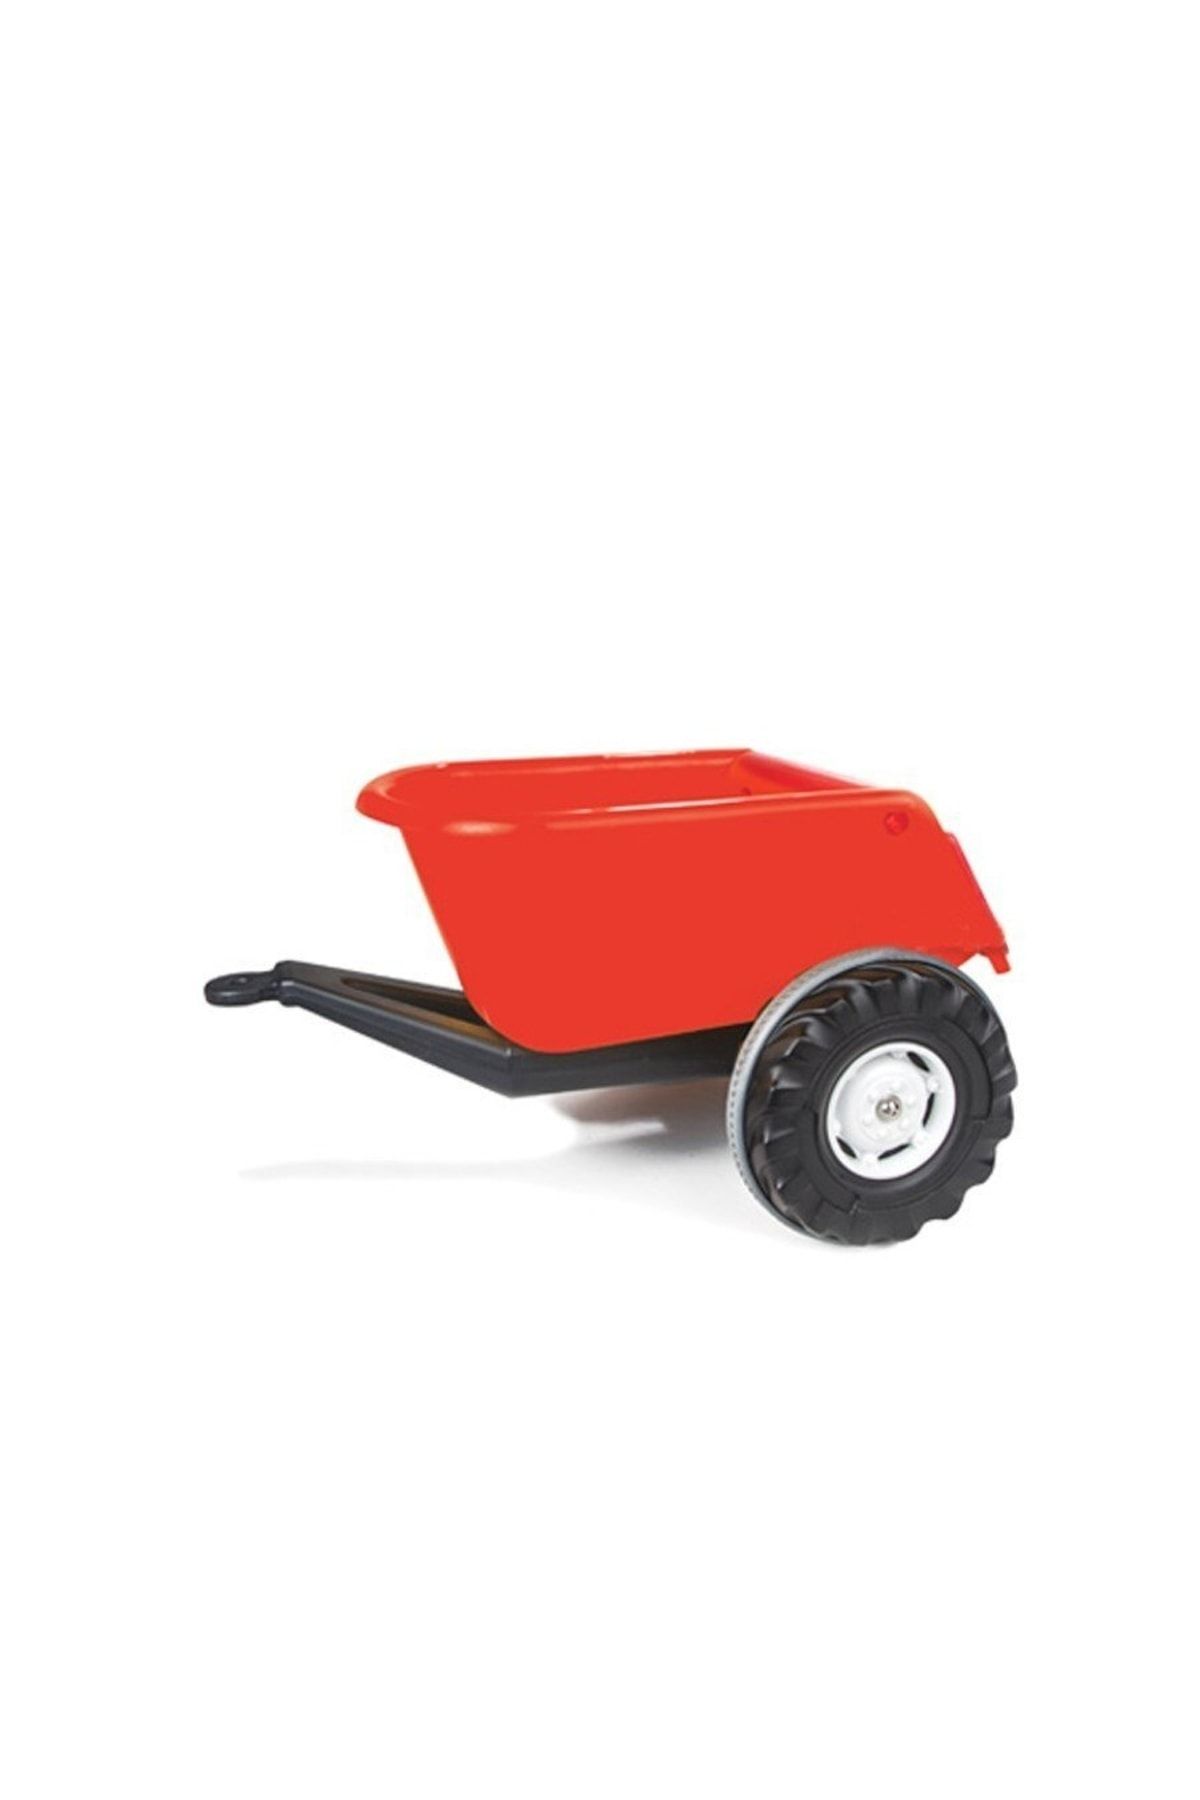 PİLSAN Süper Çocuk Oyuncak Araba Kamyoın Iş Makinesi Traktör Römork-kırmızı